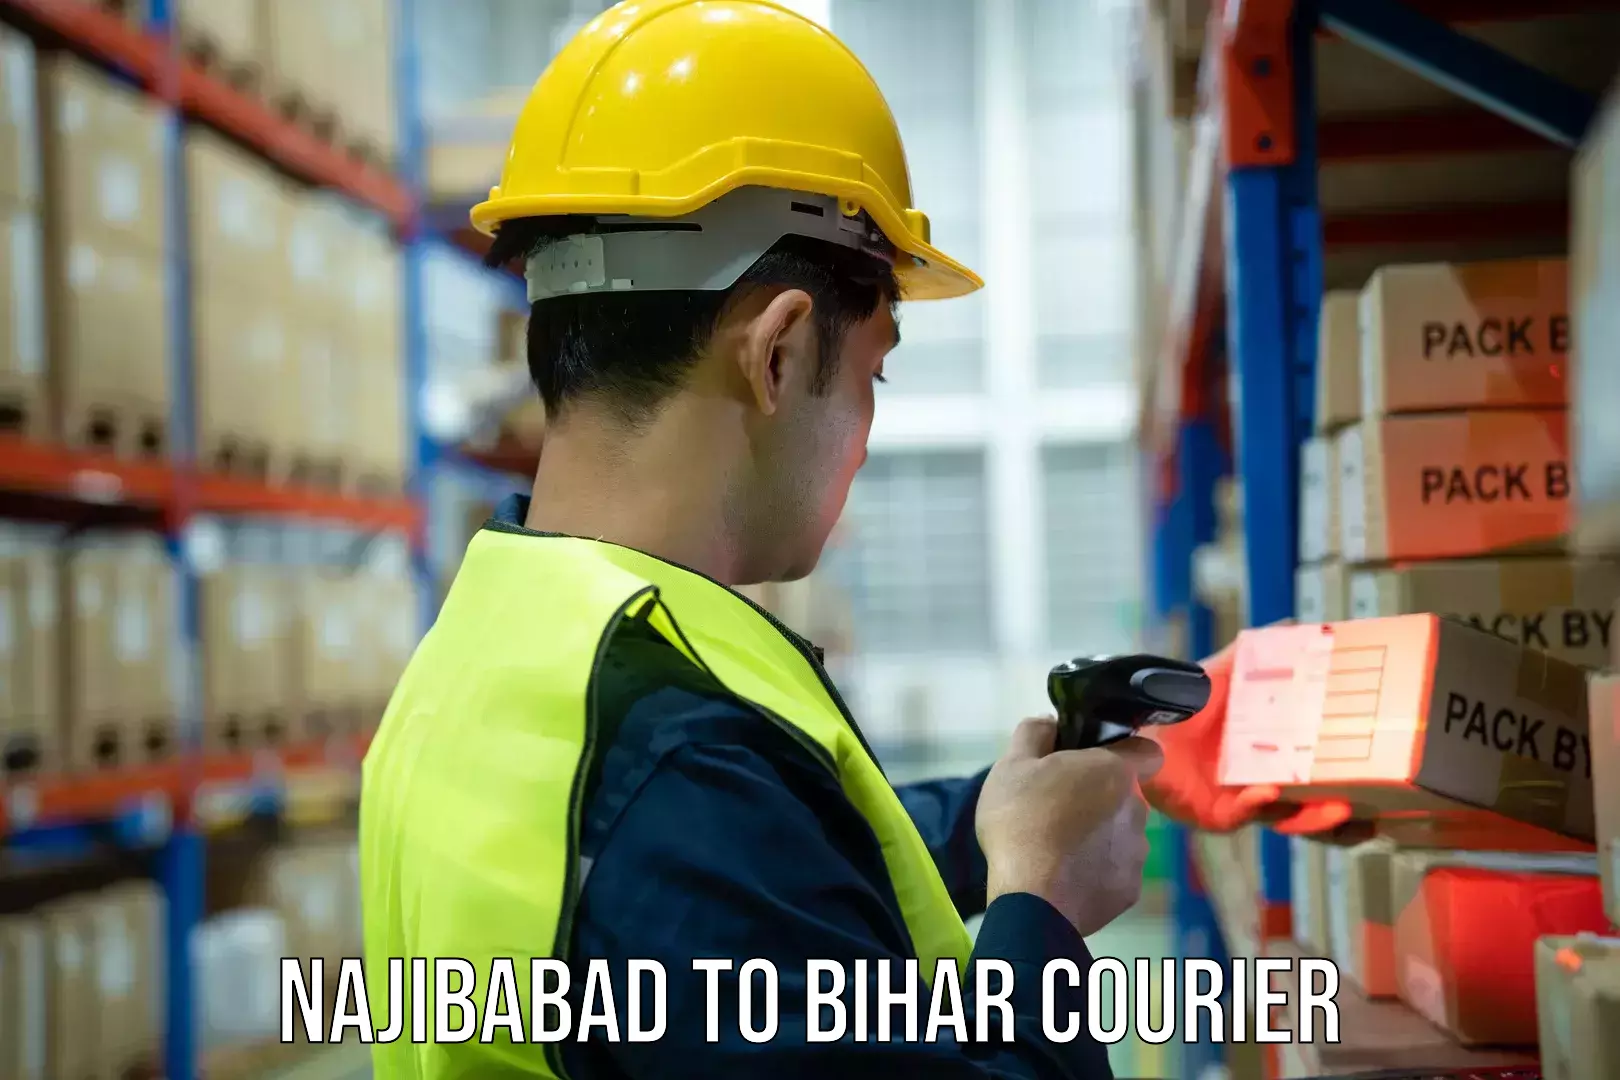 Courier service comparison Najibabad to Barh